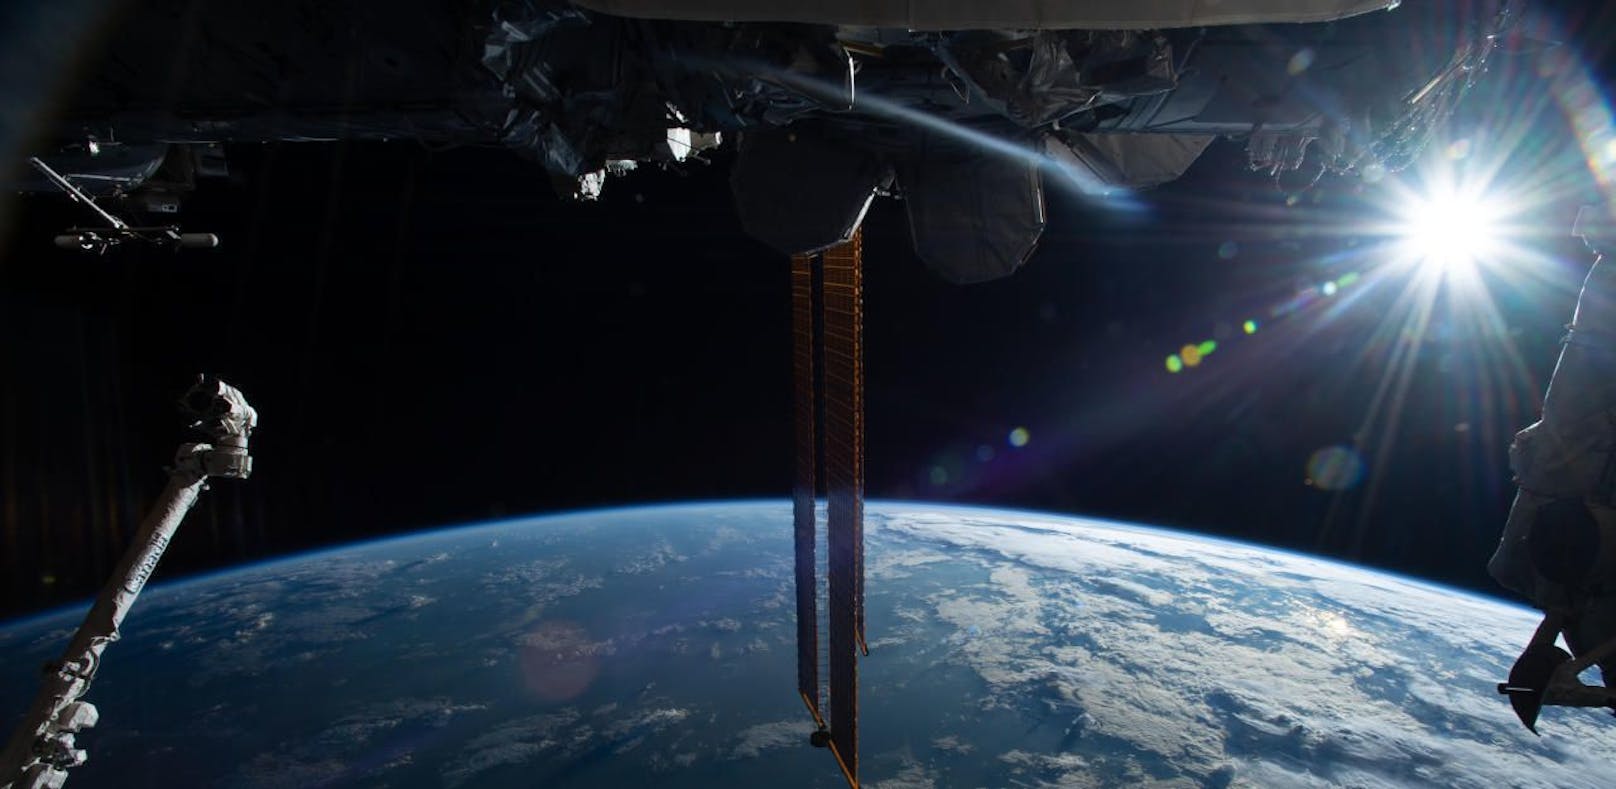 Die Nasa will die Internationale Raumstation für Touristen öffnen.
